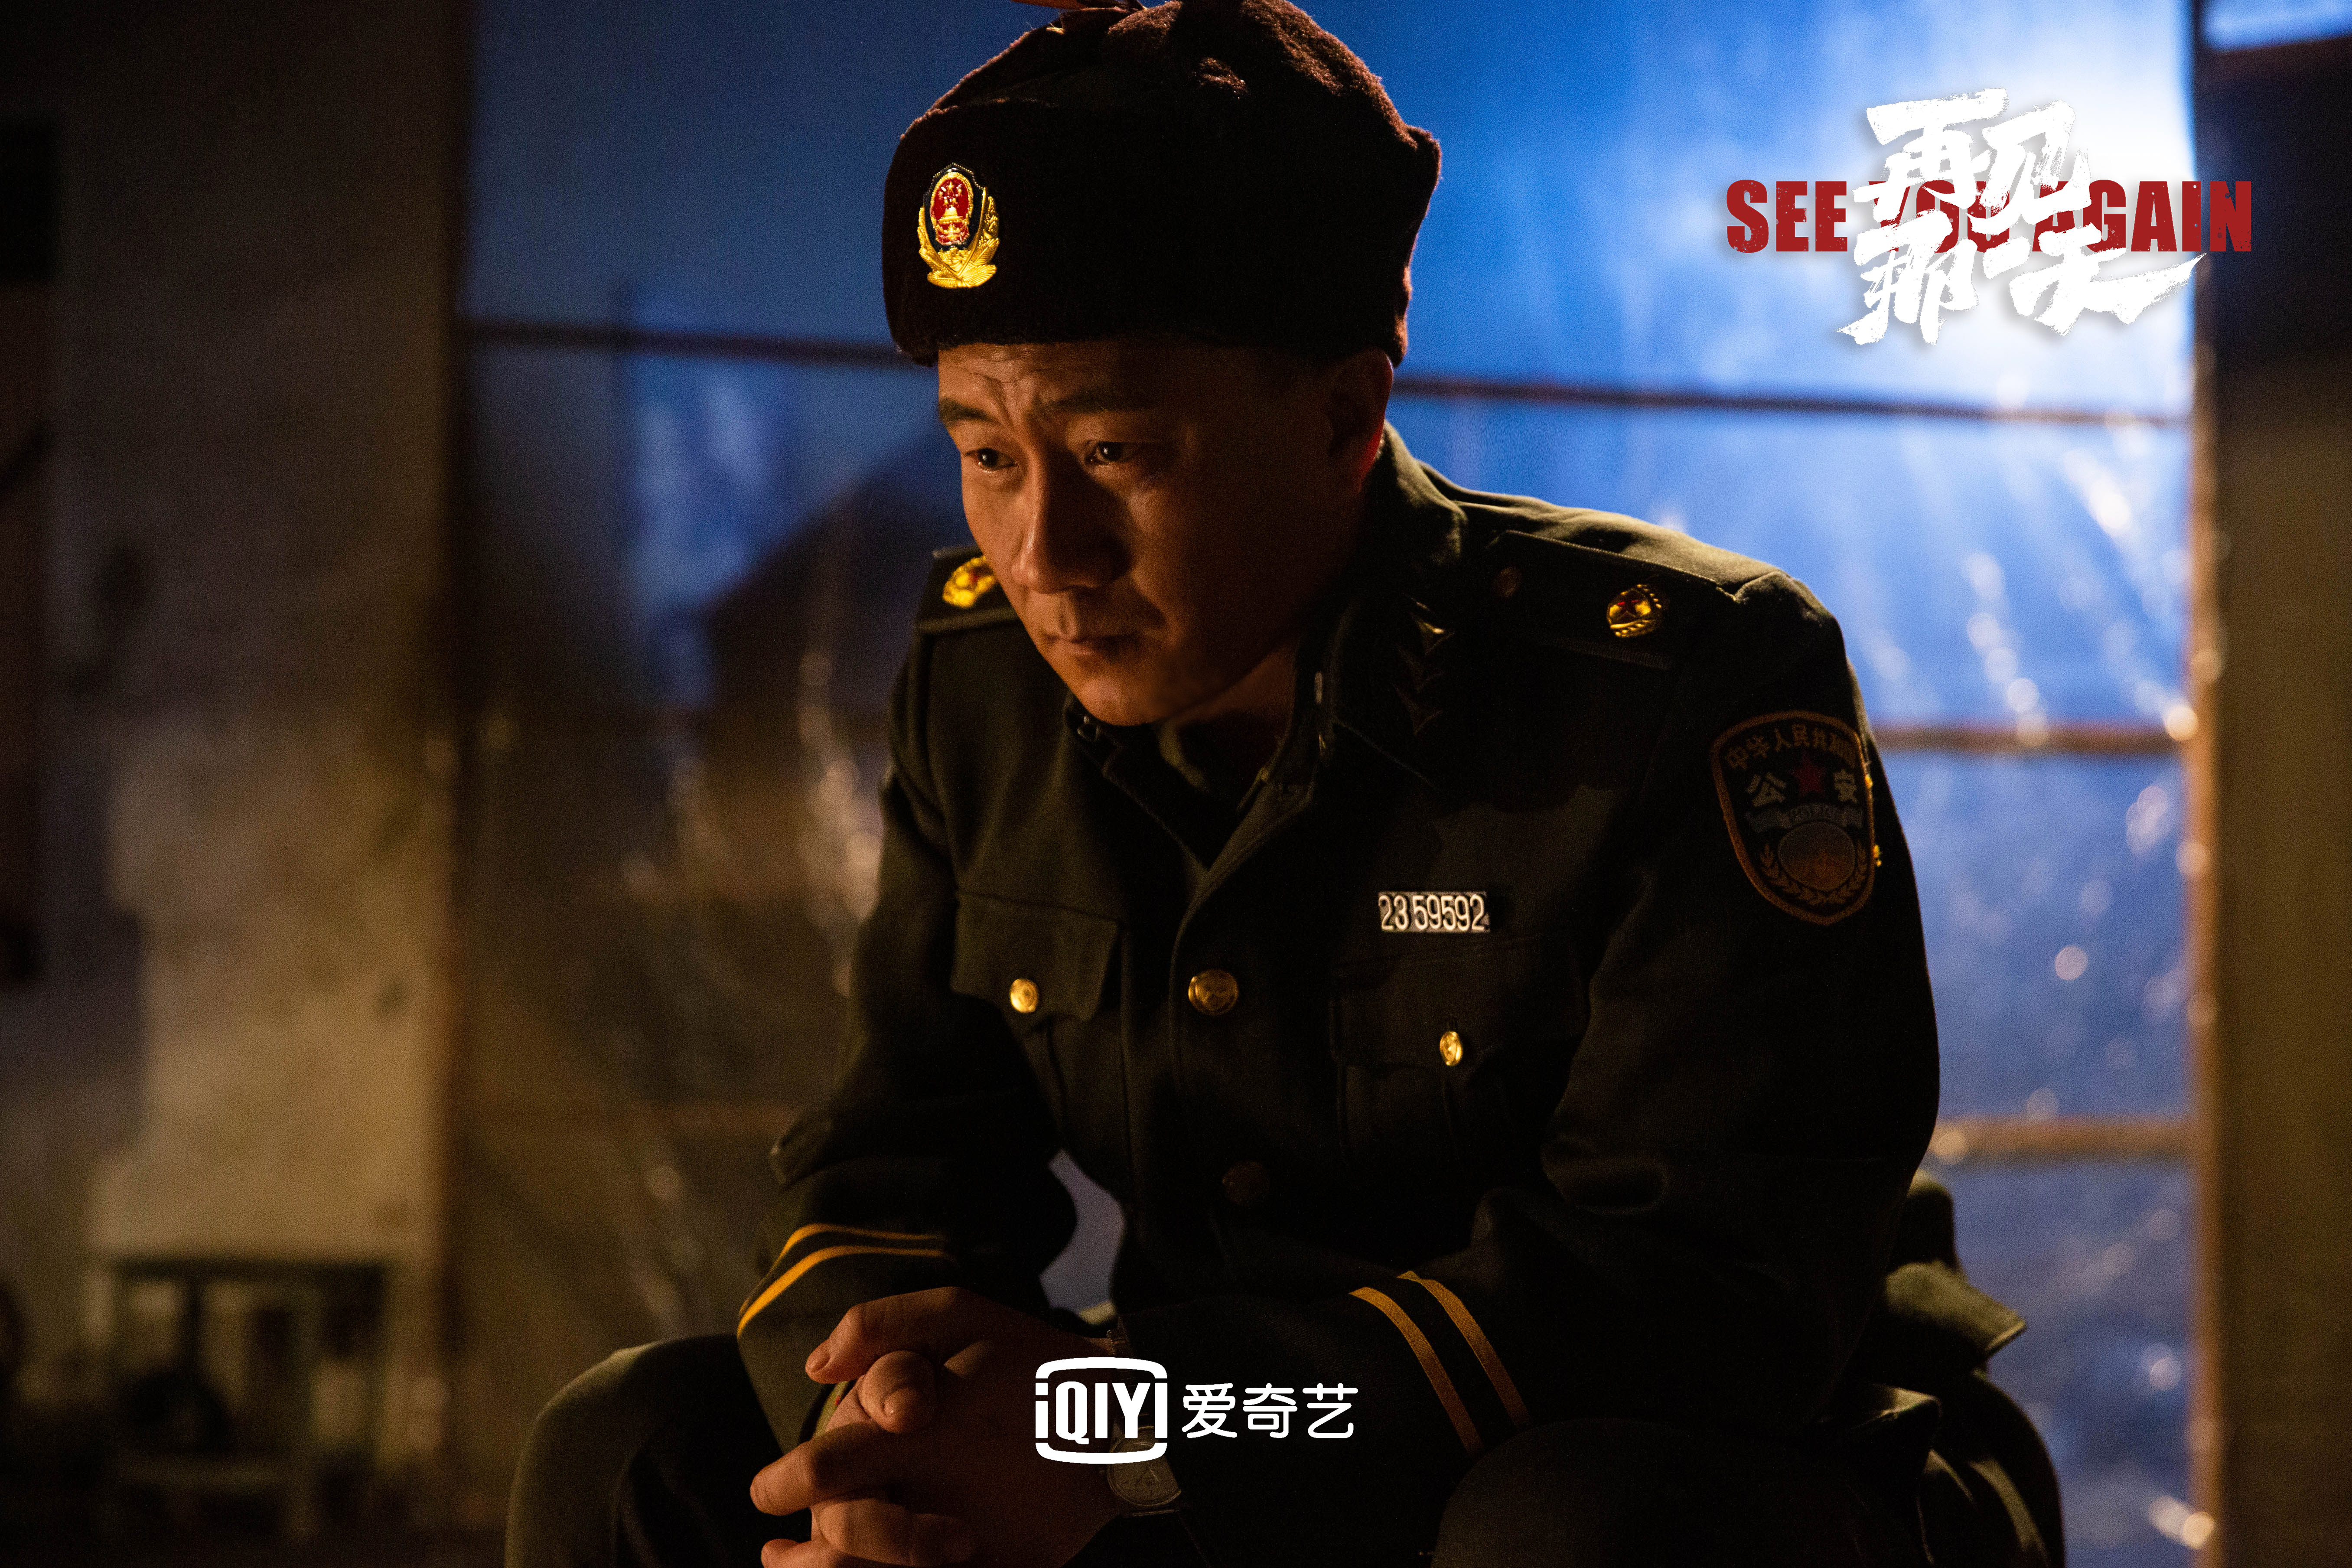 迷雾剧场的前导电影《再见那天》的定档李光洁蒋欣胡军向人民警察致敬。